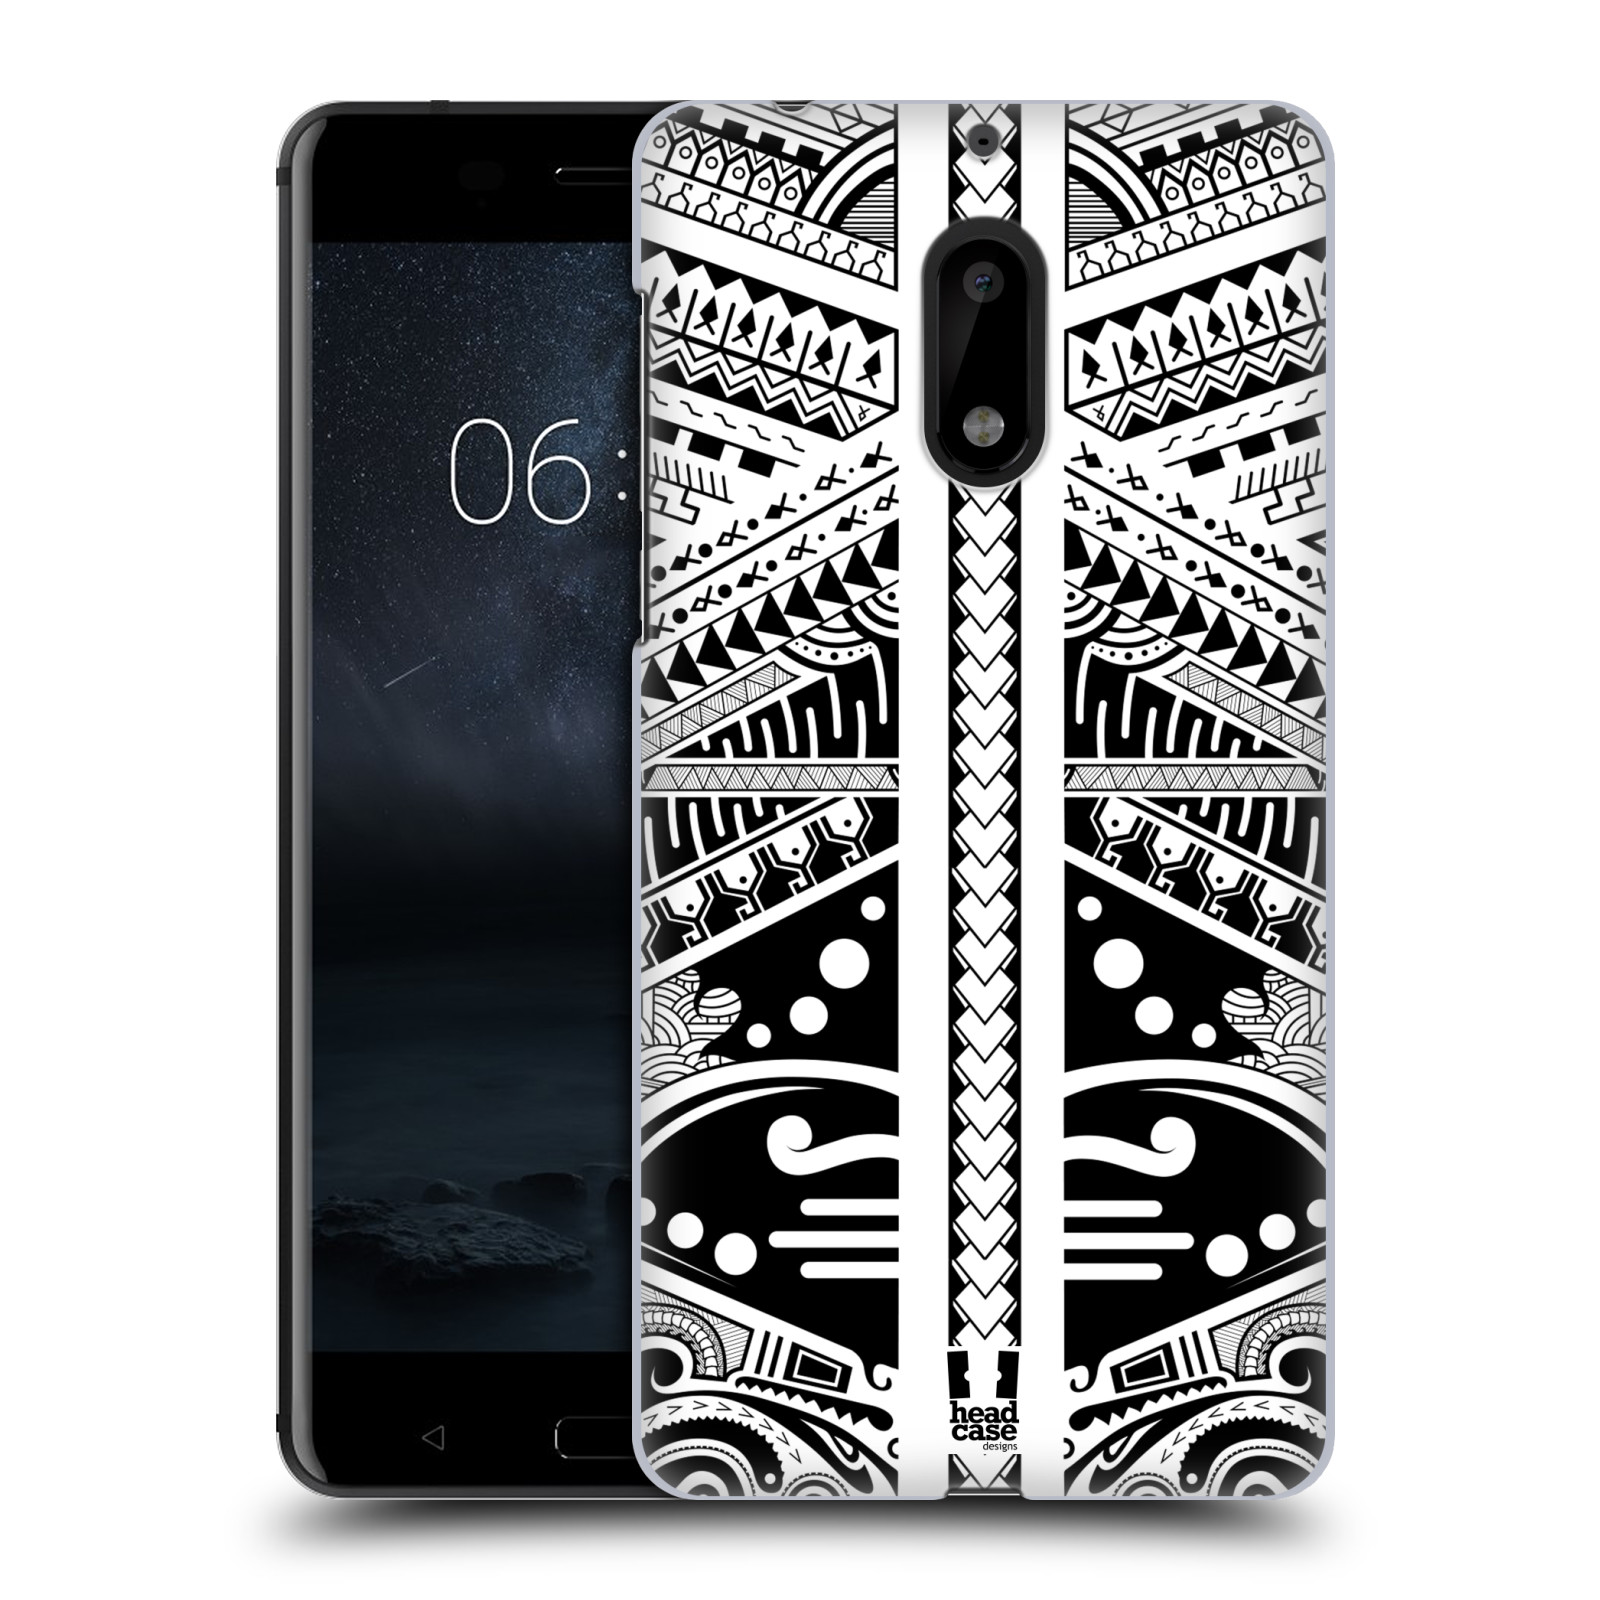 HEAD CASE plastový obal na mobil Nokia 6 vzor Maorské tetování motivy černá a bílá POLYNÉZIE